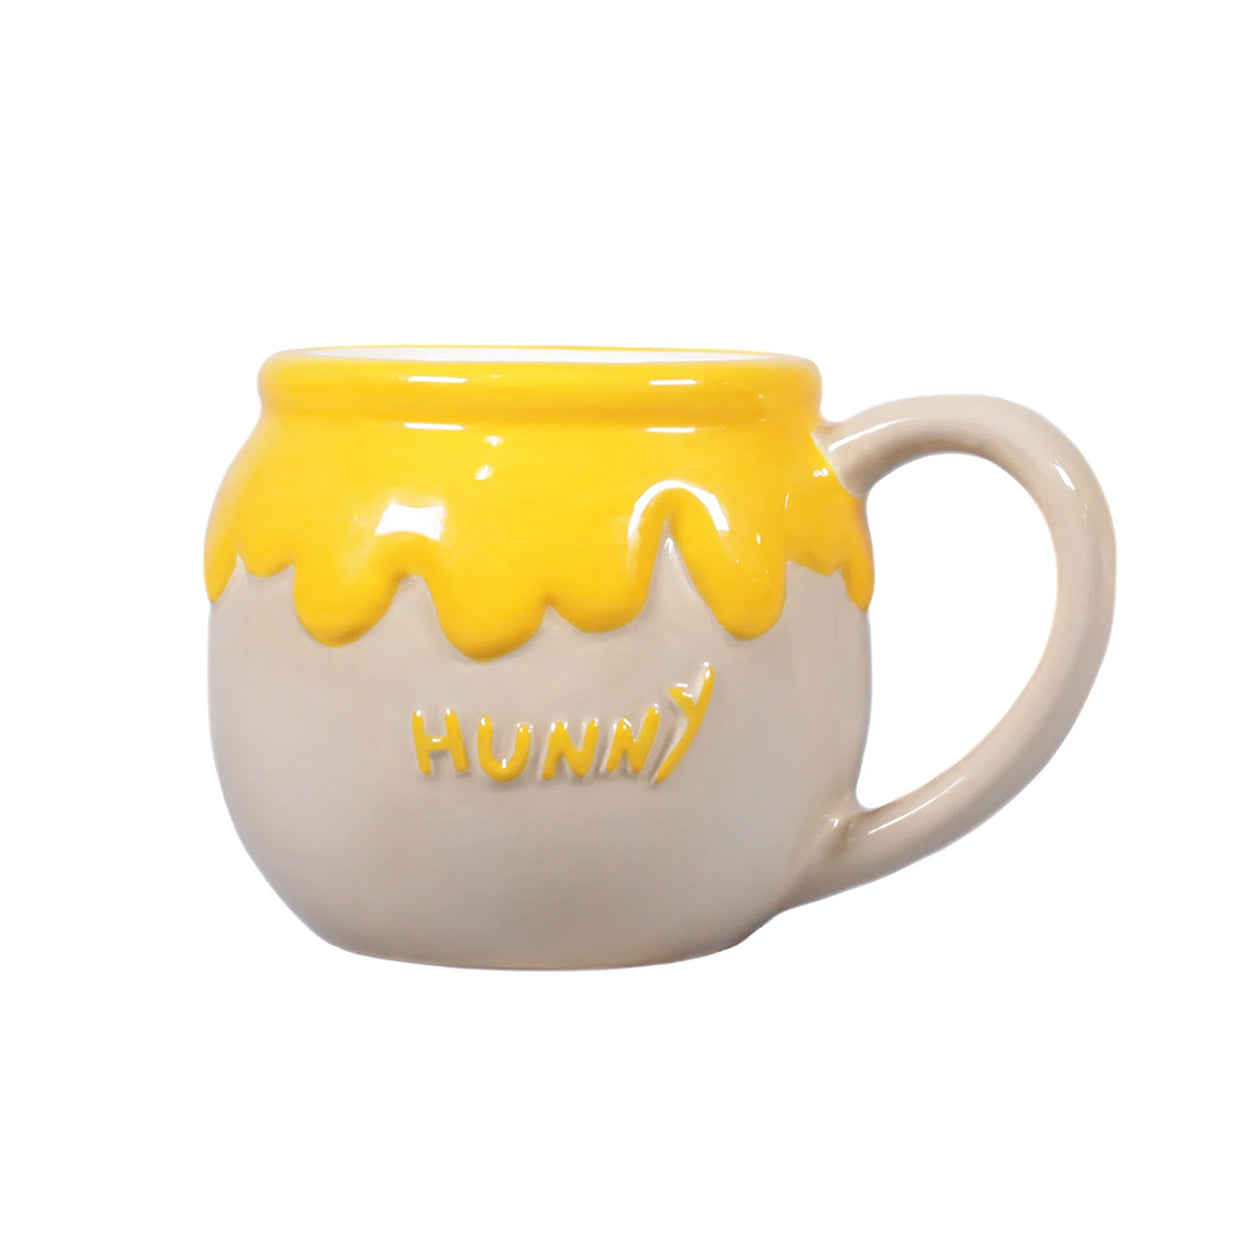 Hunny Mug